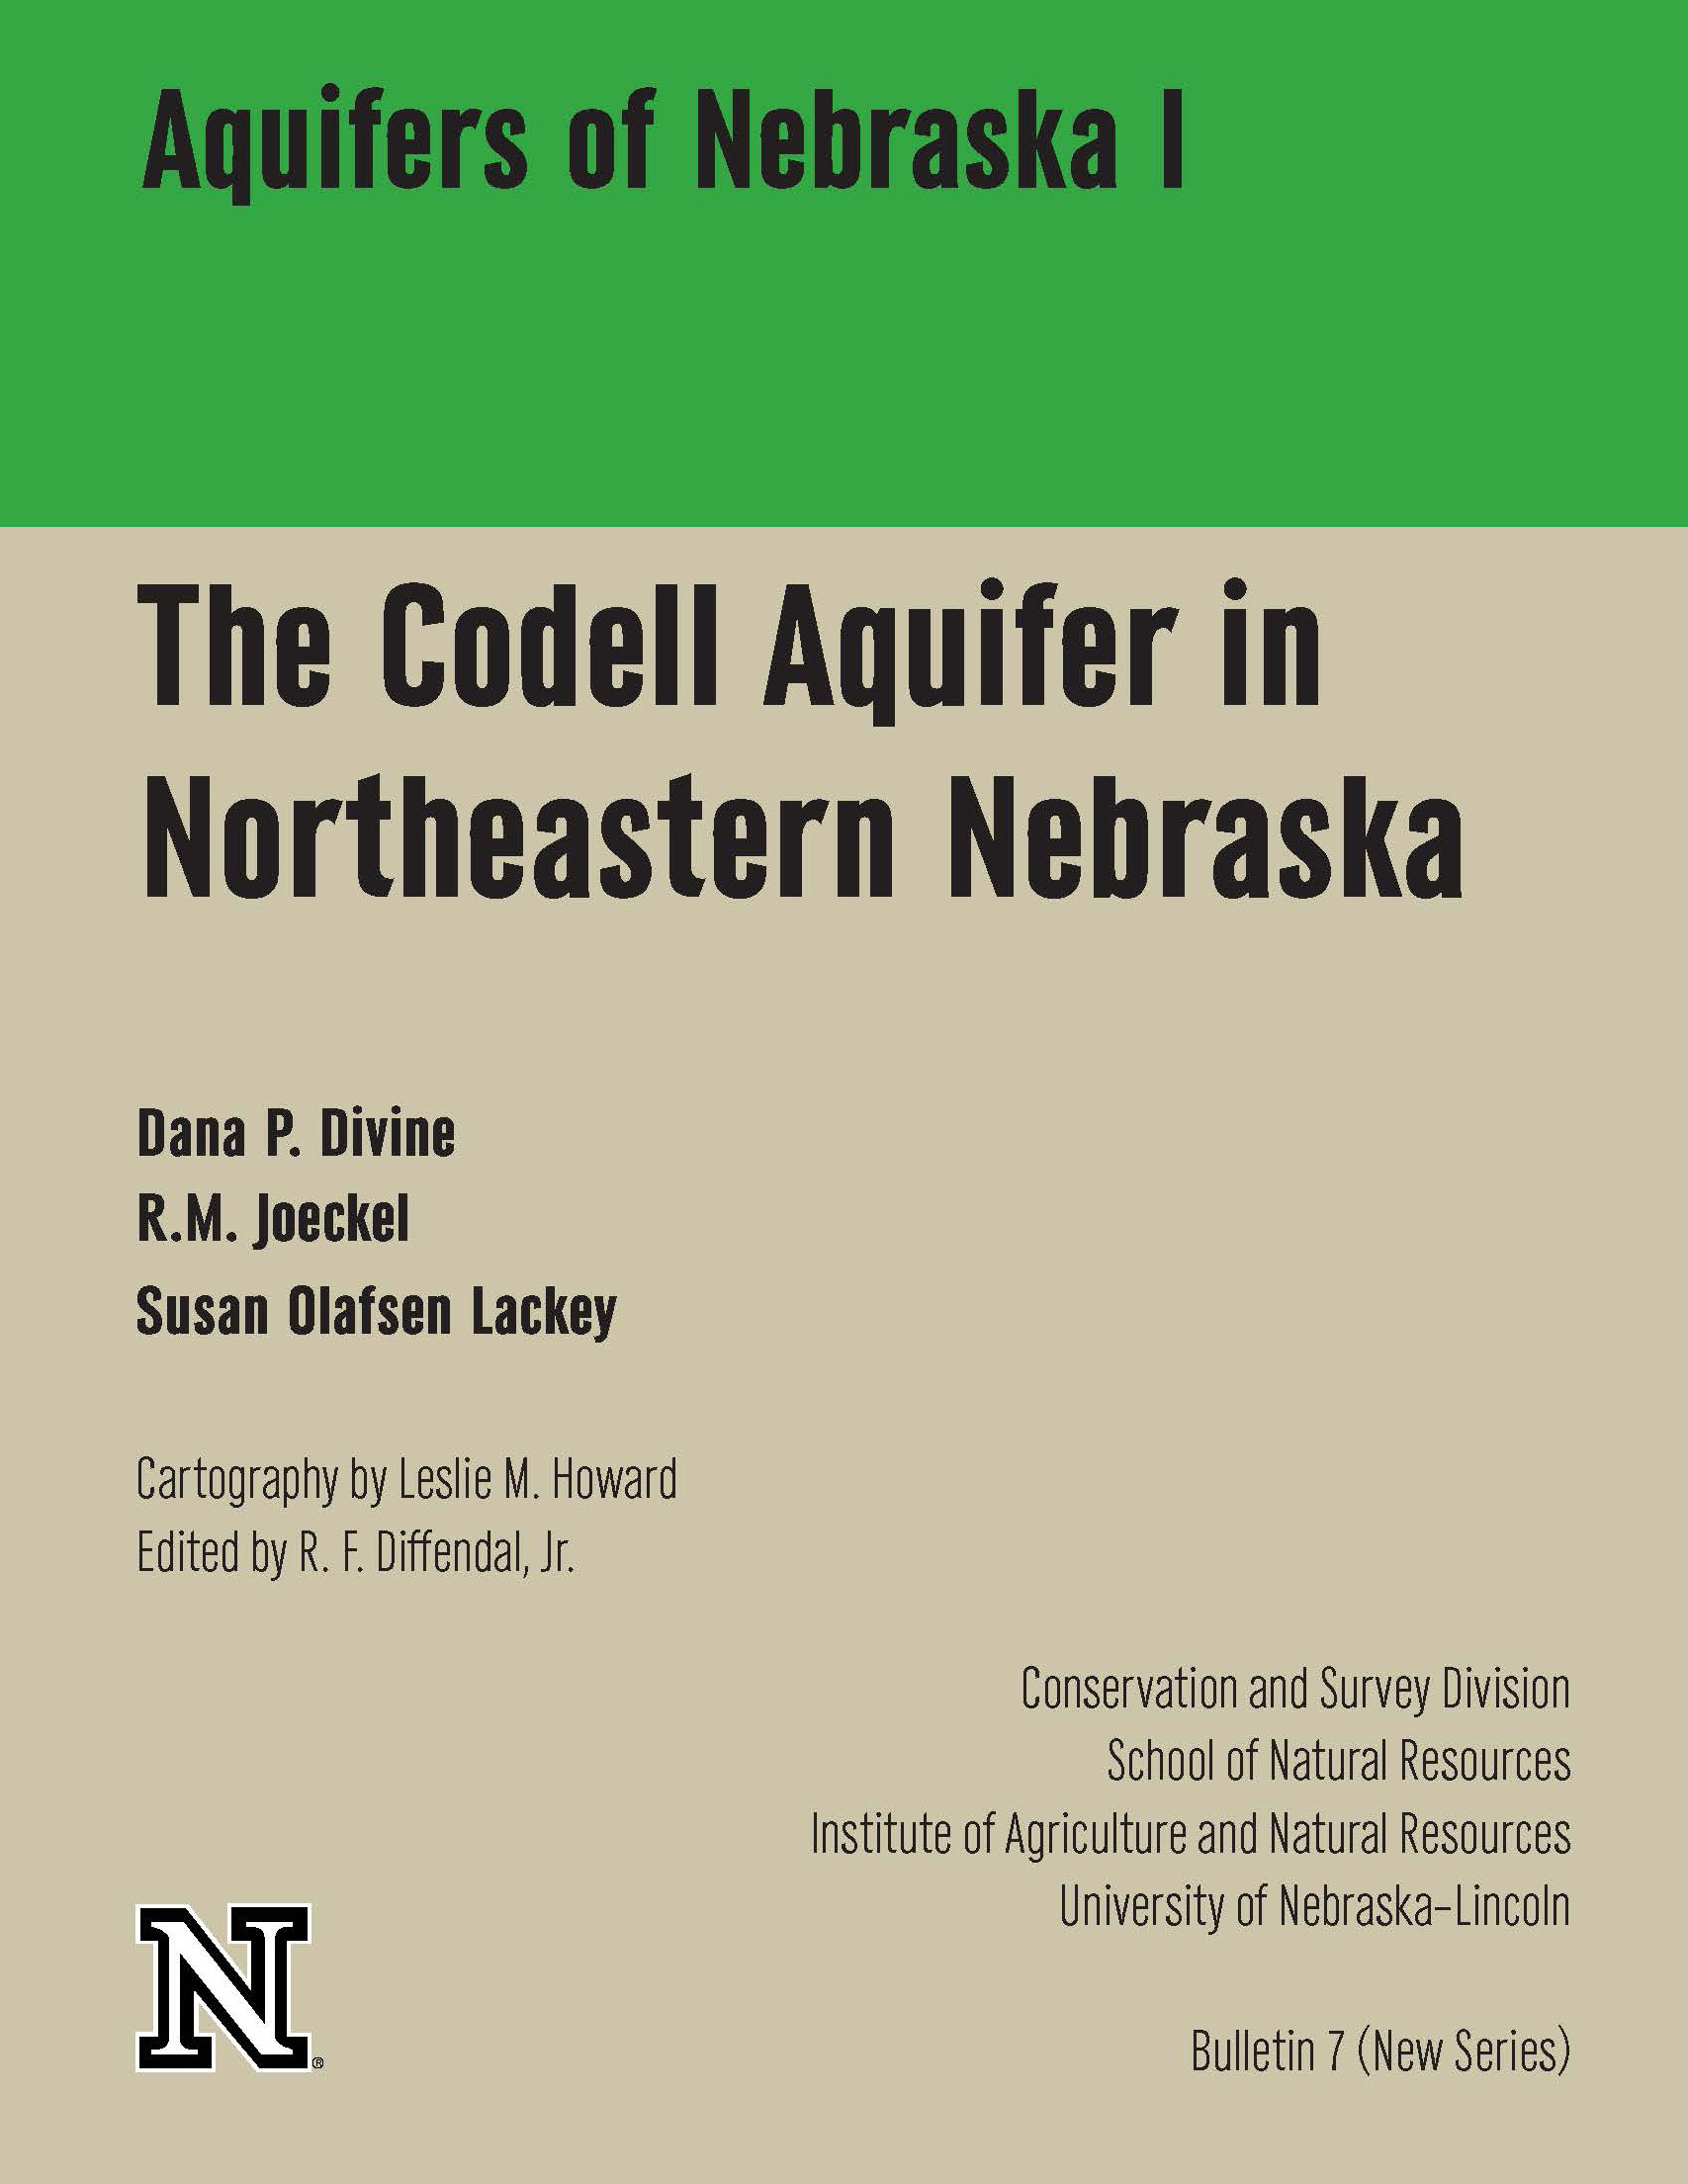 Aquifers of Nebraska 1 The Codell Aquifer in Northeastern Nebraska CB-7 (NS)